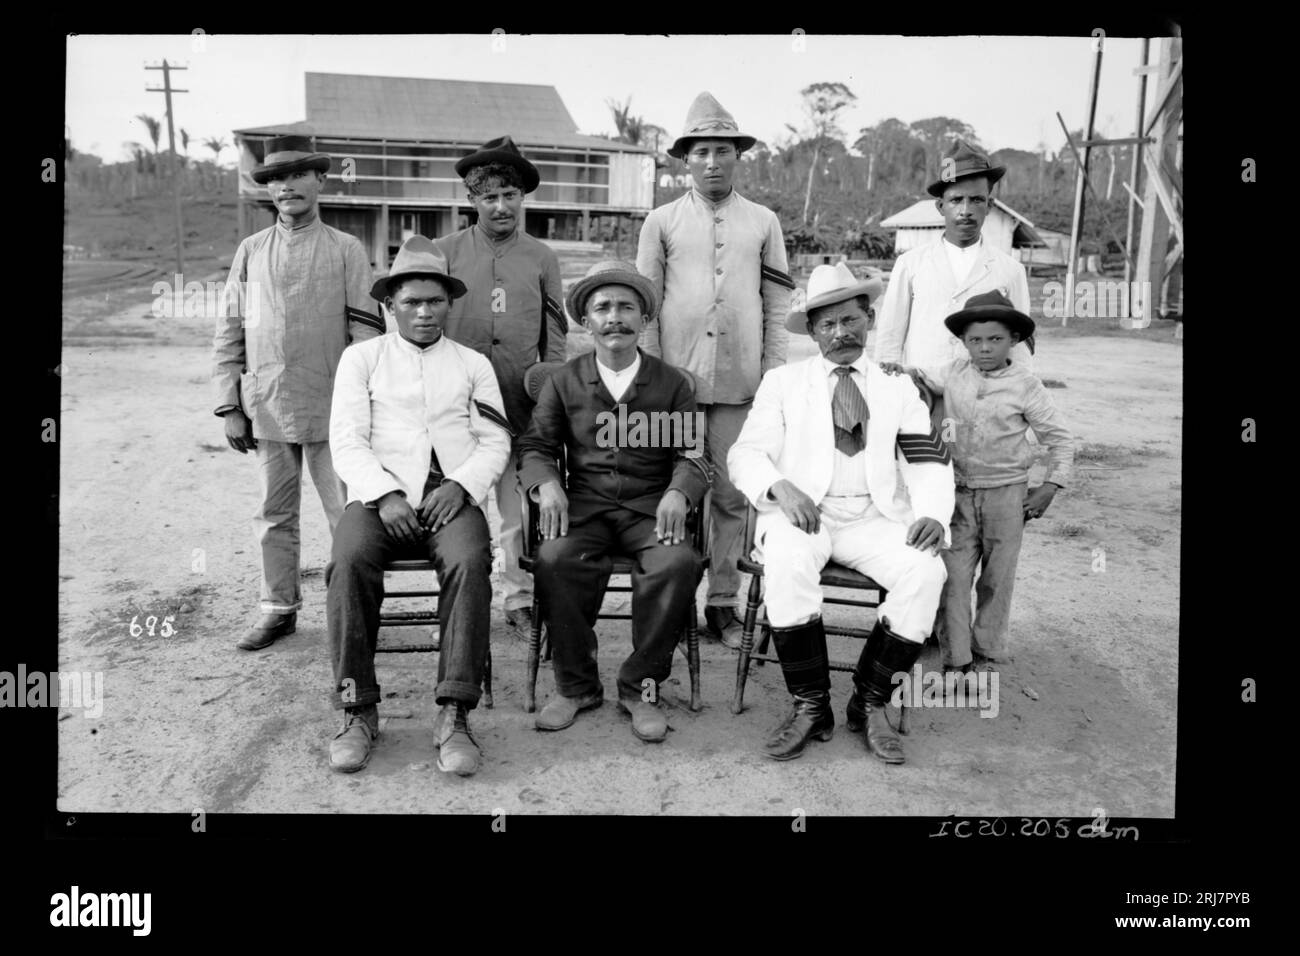 Grupo de Homens e Menino Anônimo - 685 1910 by Dana B. Merrill Stock Photo